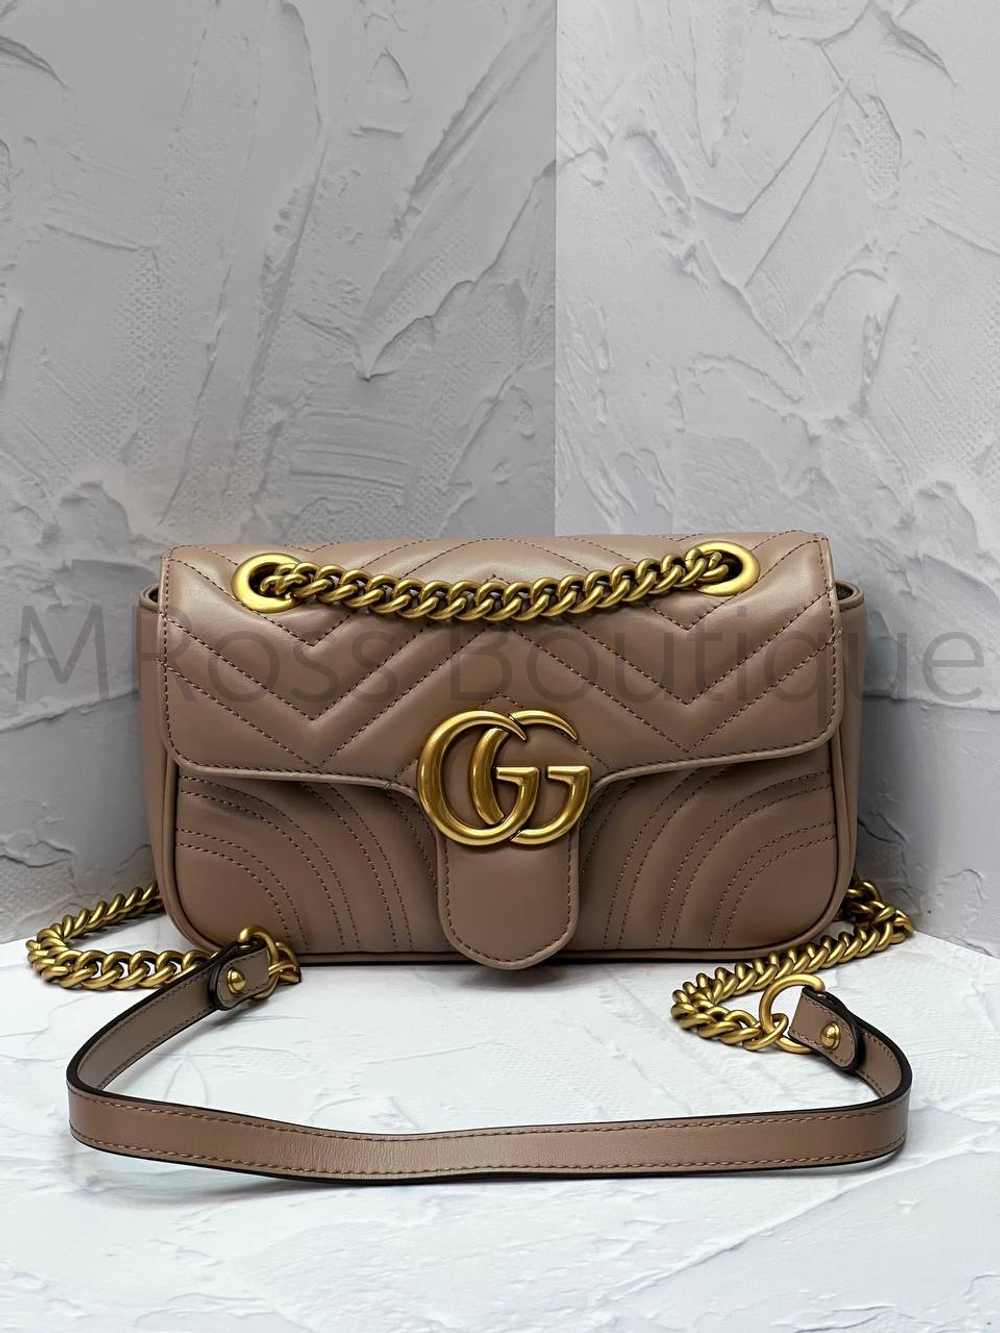 Сумка Gucci GG Marmont (Гуччи) цвета капучино